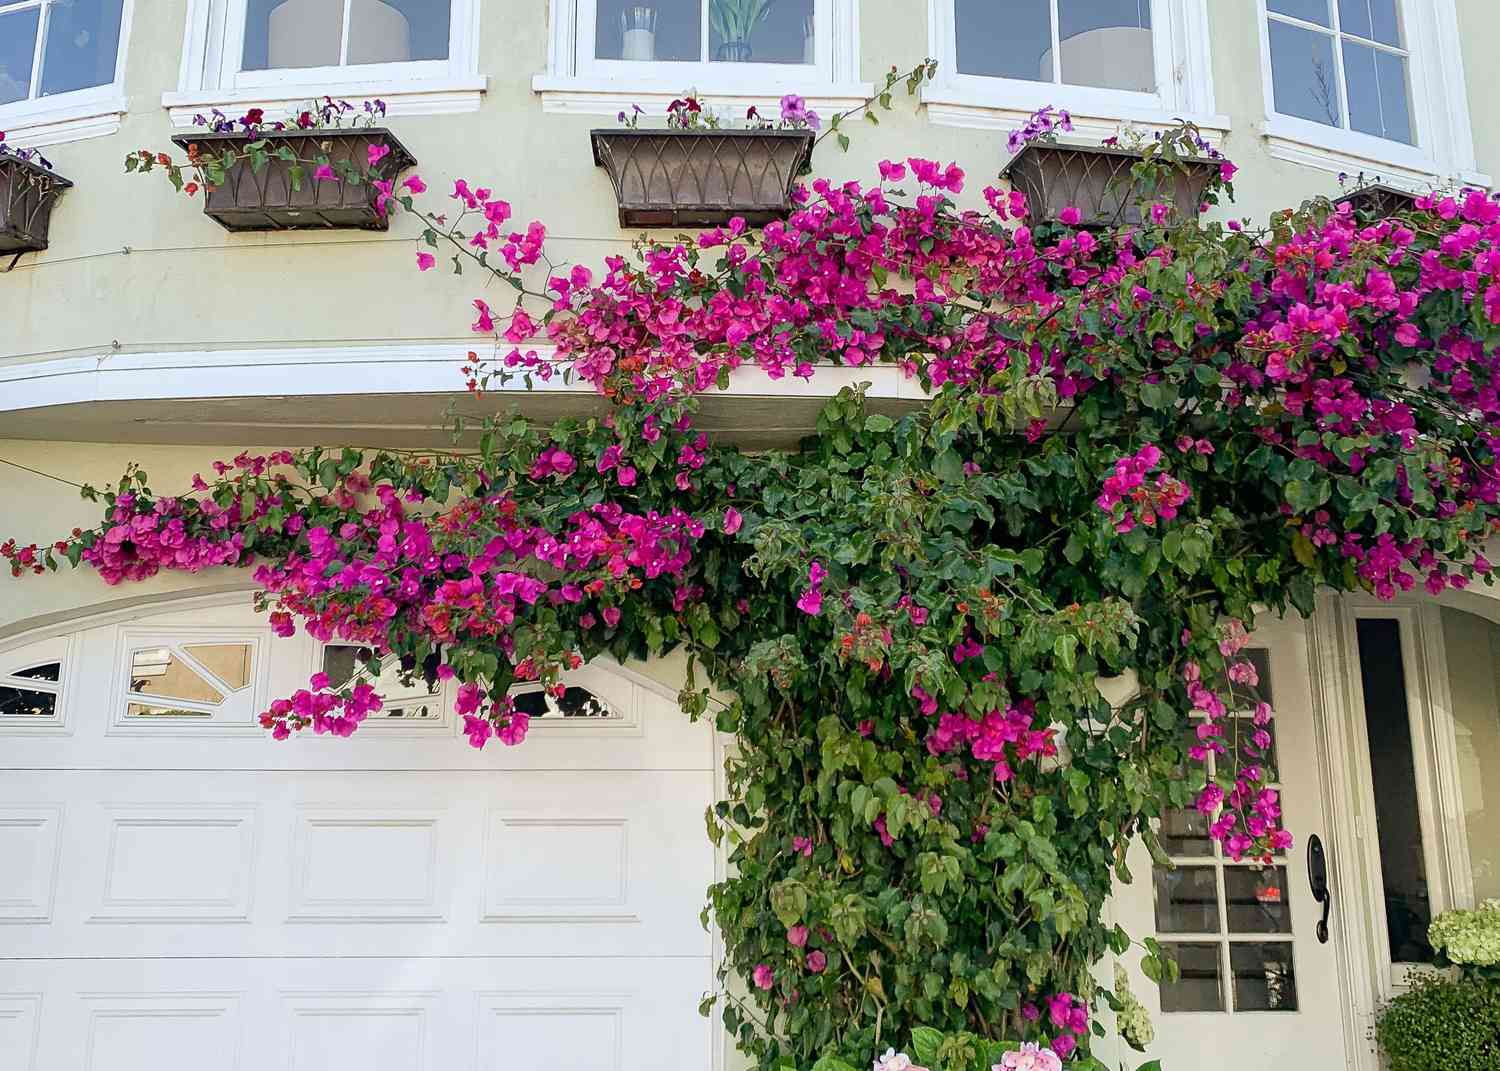 Arbuste de bougainvilliers couvrant la façade du garage avec des fleurs rose foncé sur les lianes